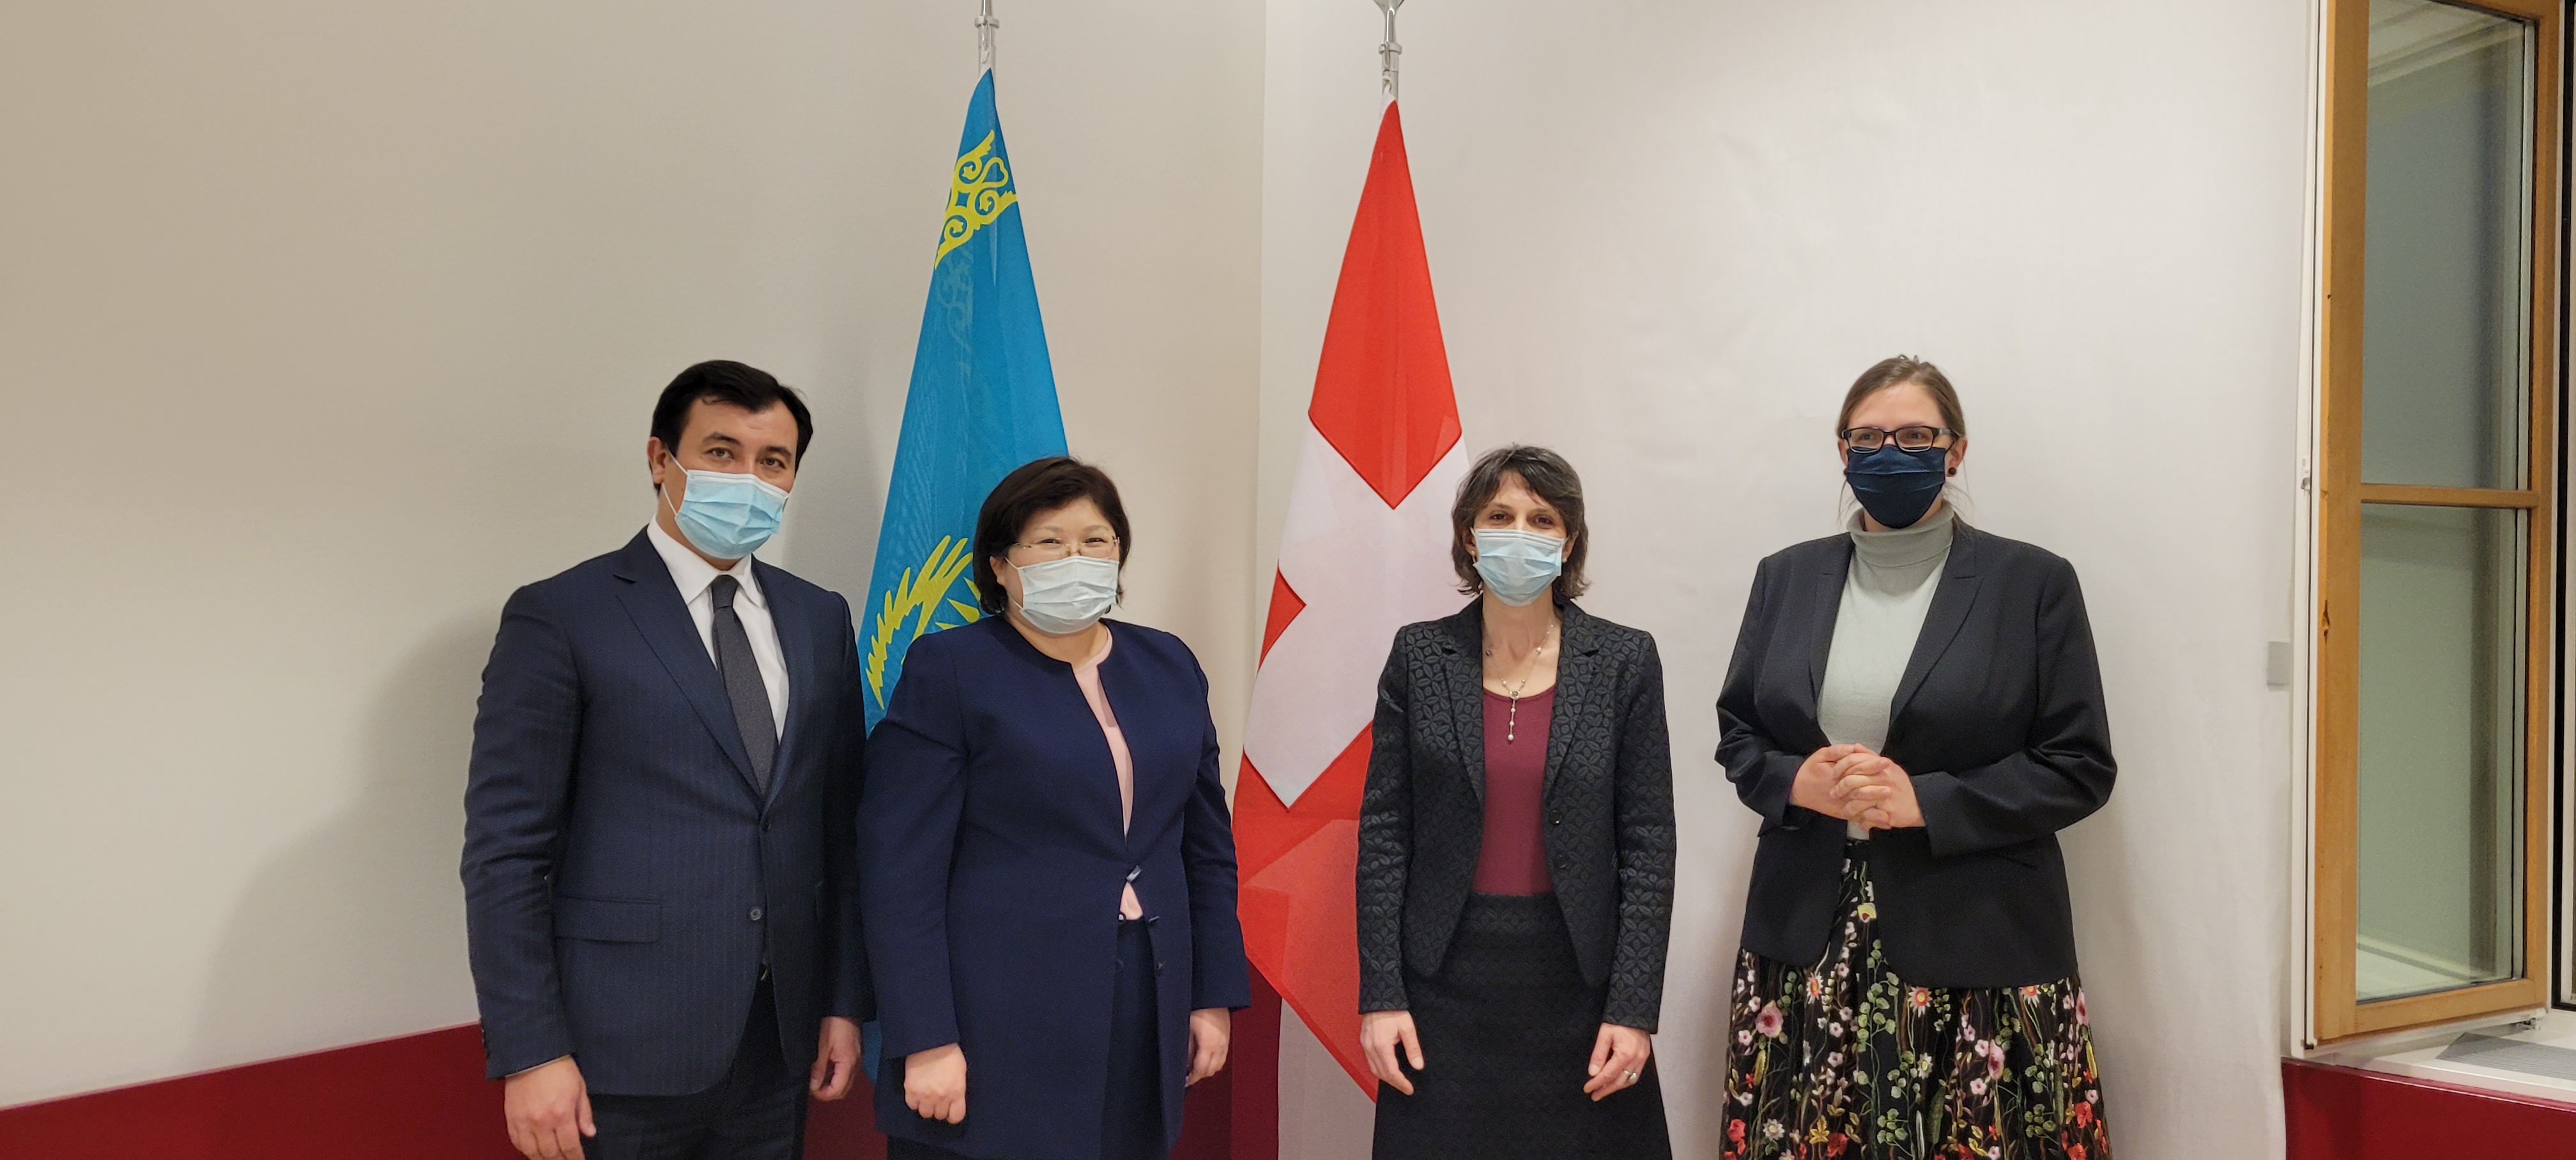 Уполномоченный по правам человека Казахстана посетила с визитом Швейцарию